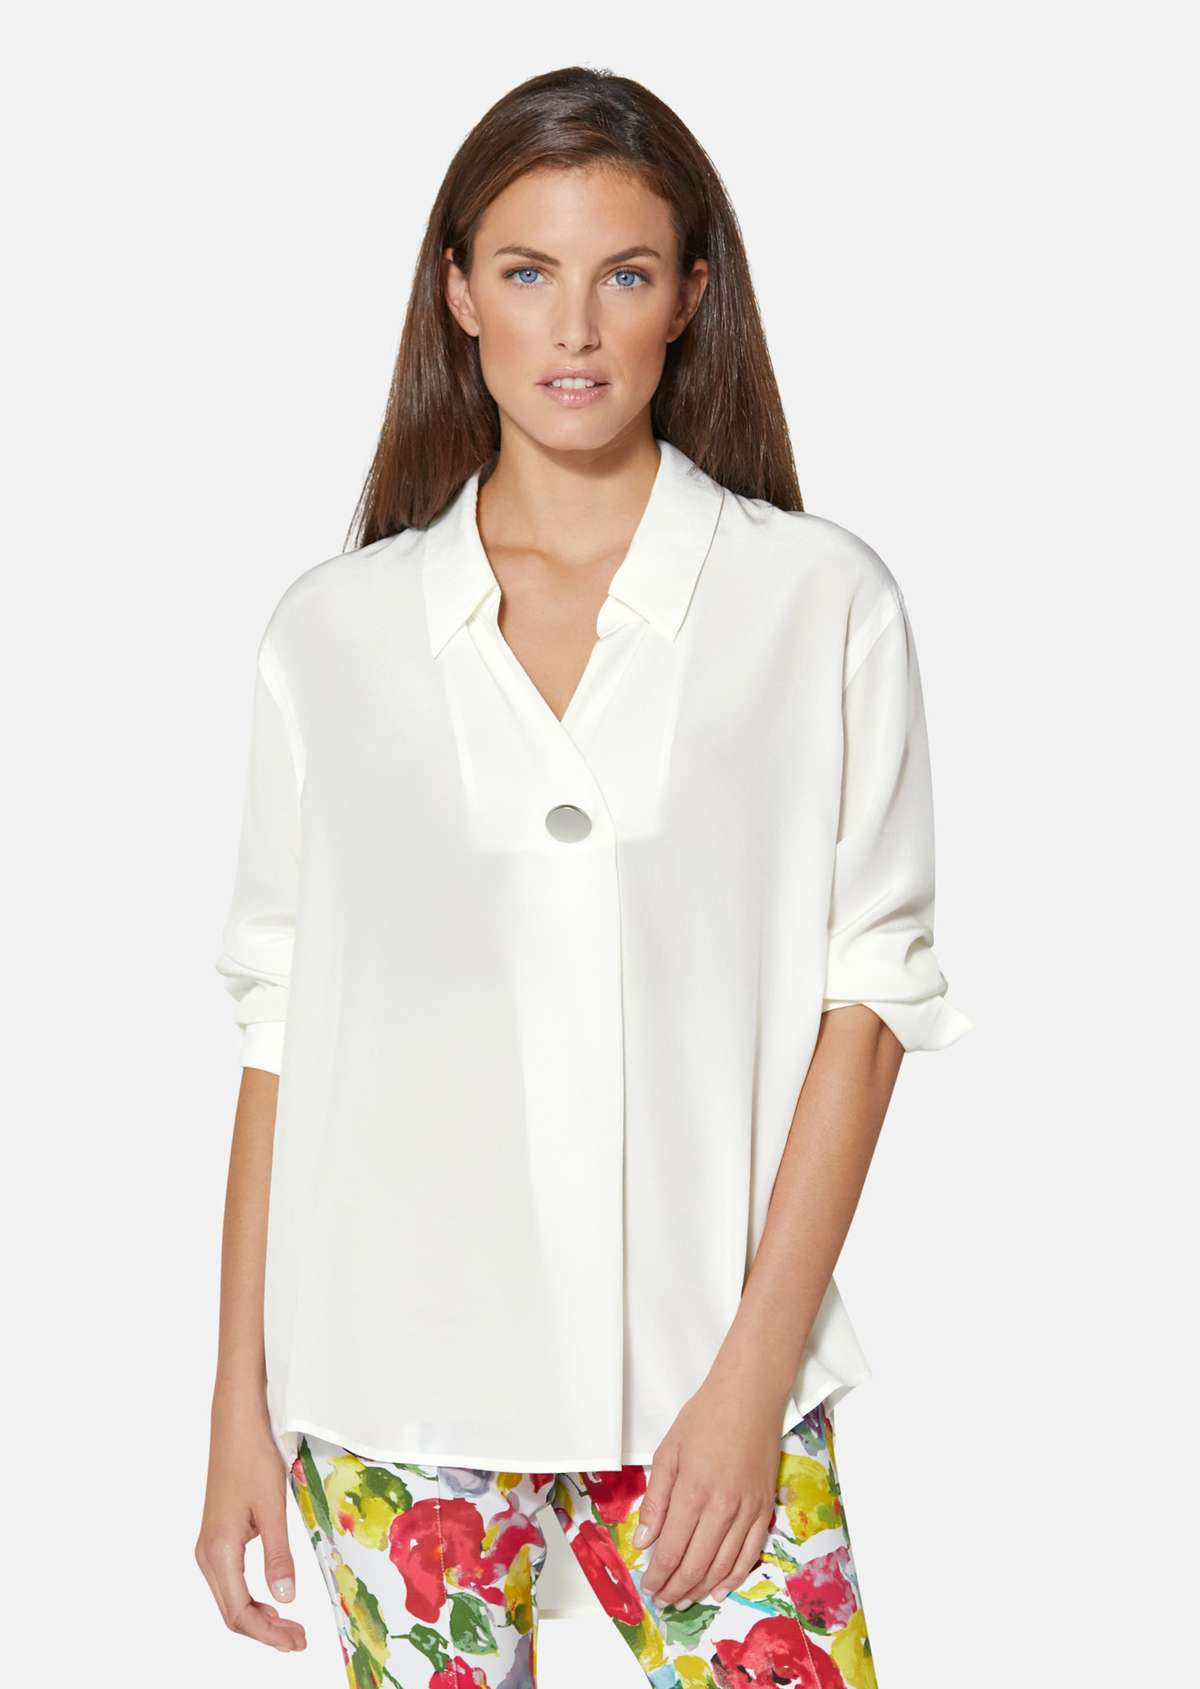 Шелковая блузка с элегантной декоративной пуговицей.